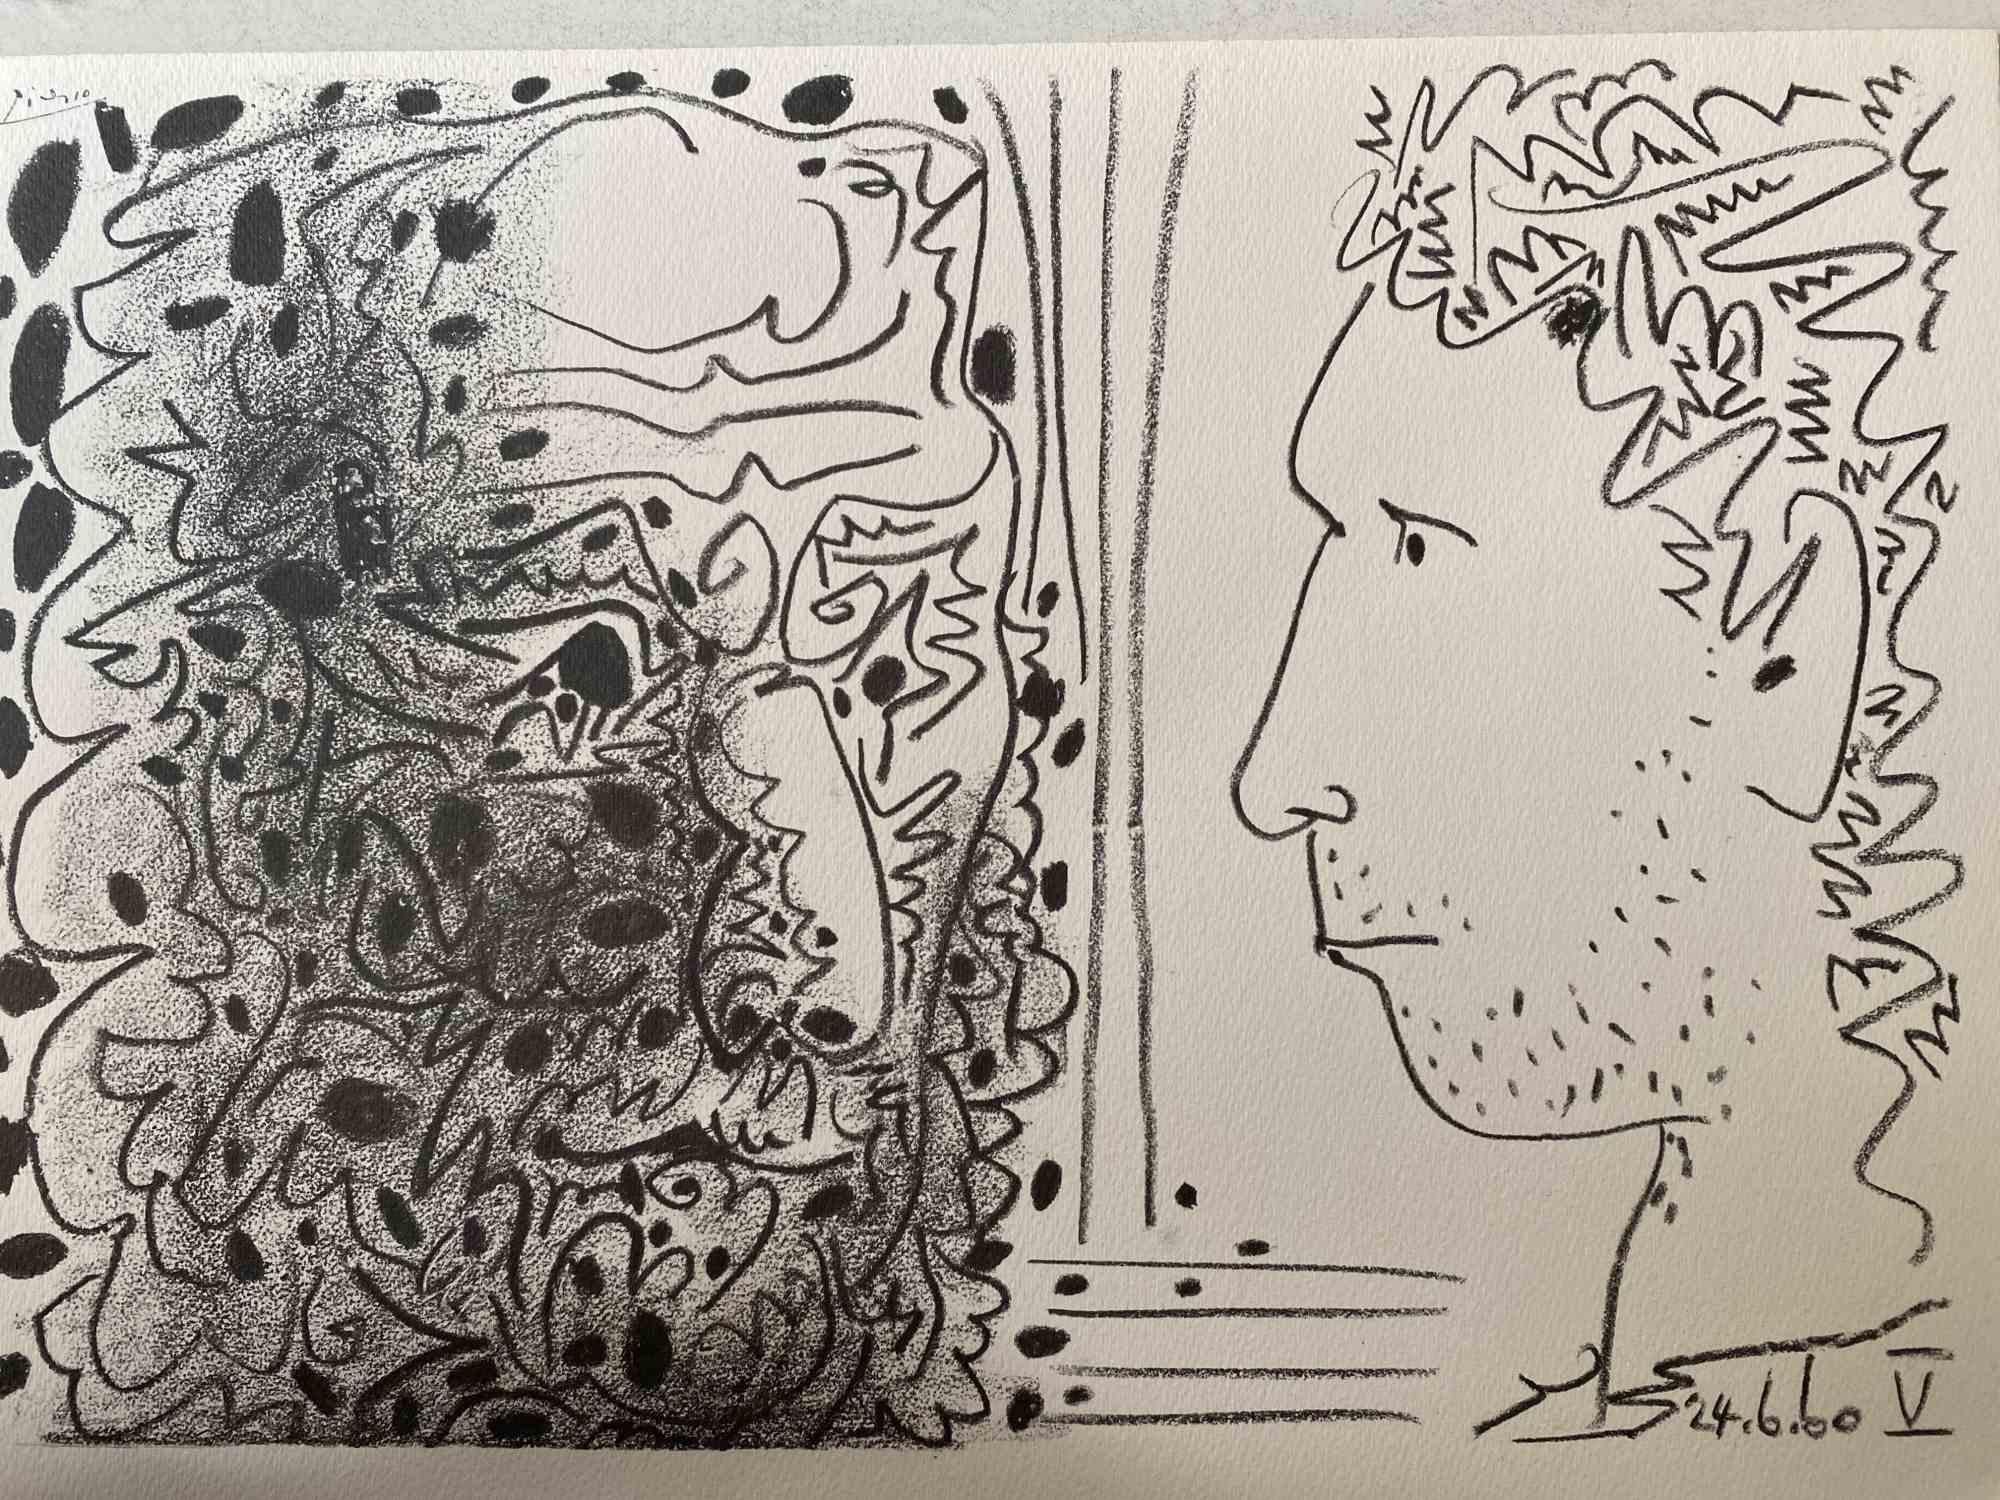 (after) Pablo Picasso Figurative Print - Deux têtes - Photolithograph after Pablo Picasso - 1960s